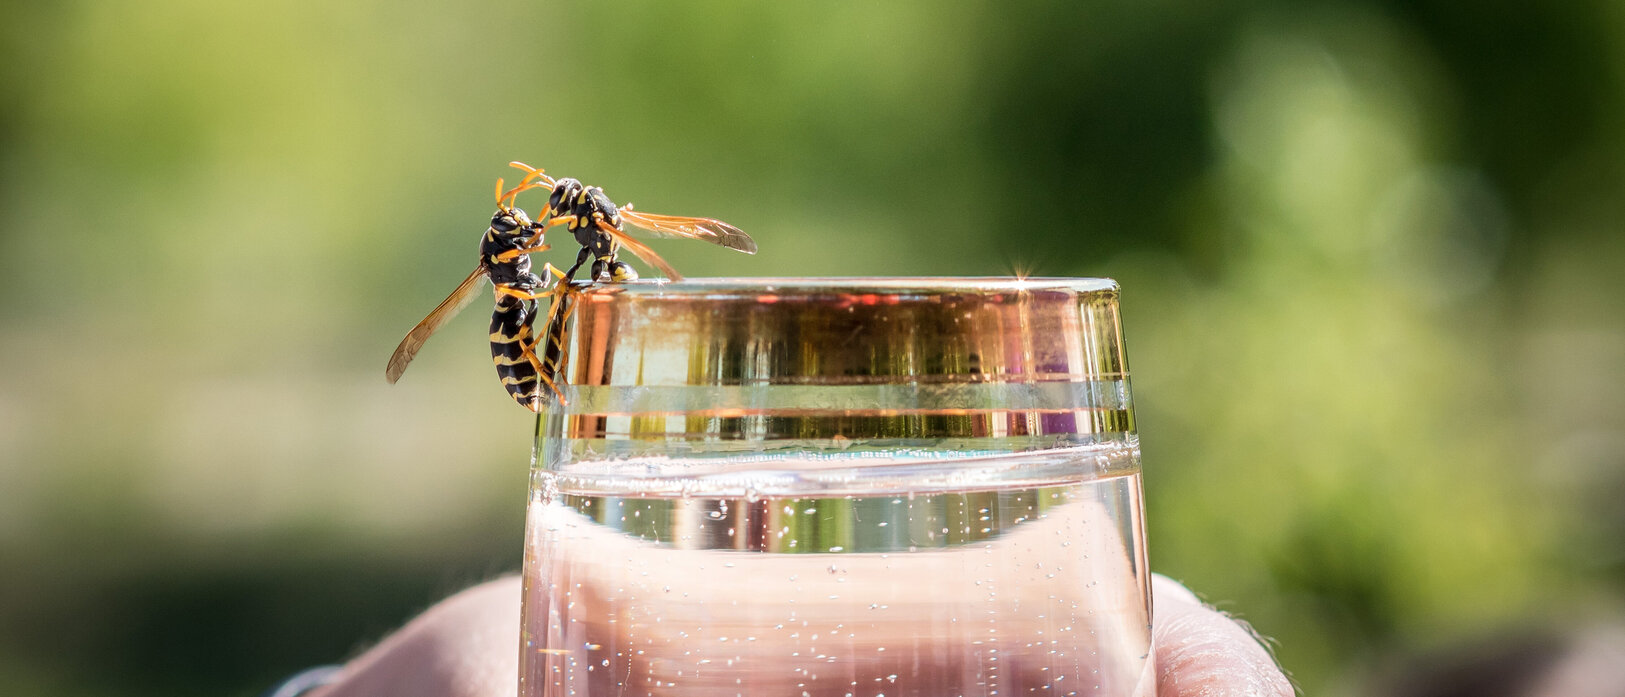 Bild: Wespe am Rand eines Wasserglases